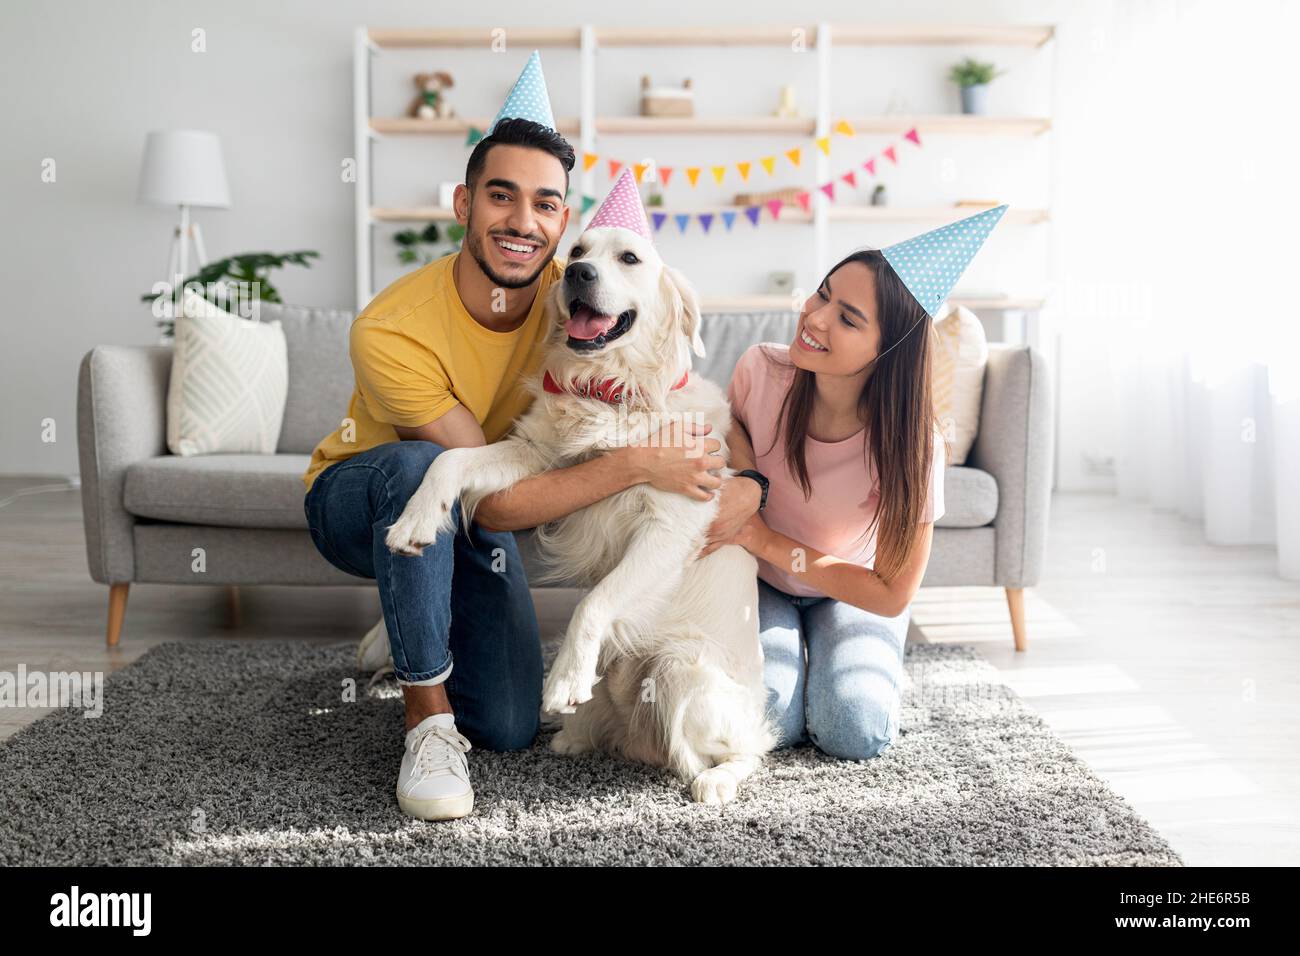 Tutta la lunghezza della giovane coppia multinazionale in cappelli di partito che celebra il compleanno del cane, posando e sorridendo alla macchina fotografica Foto Stock